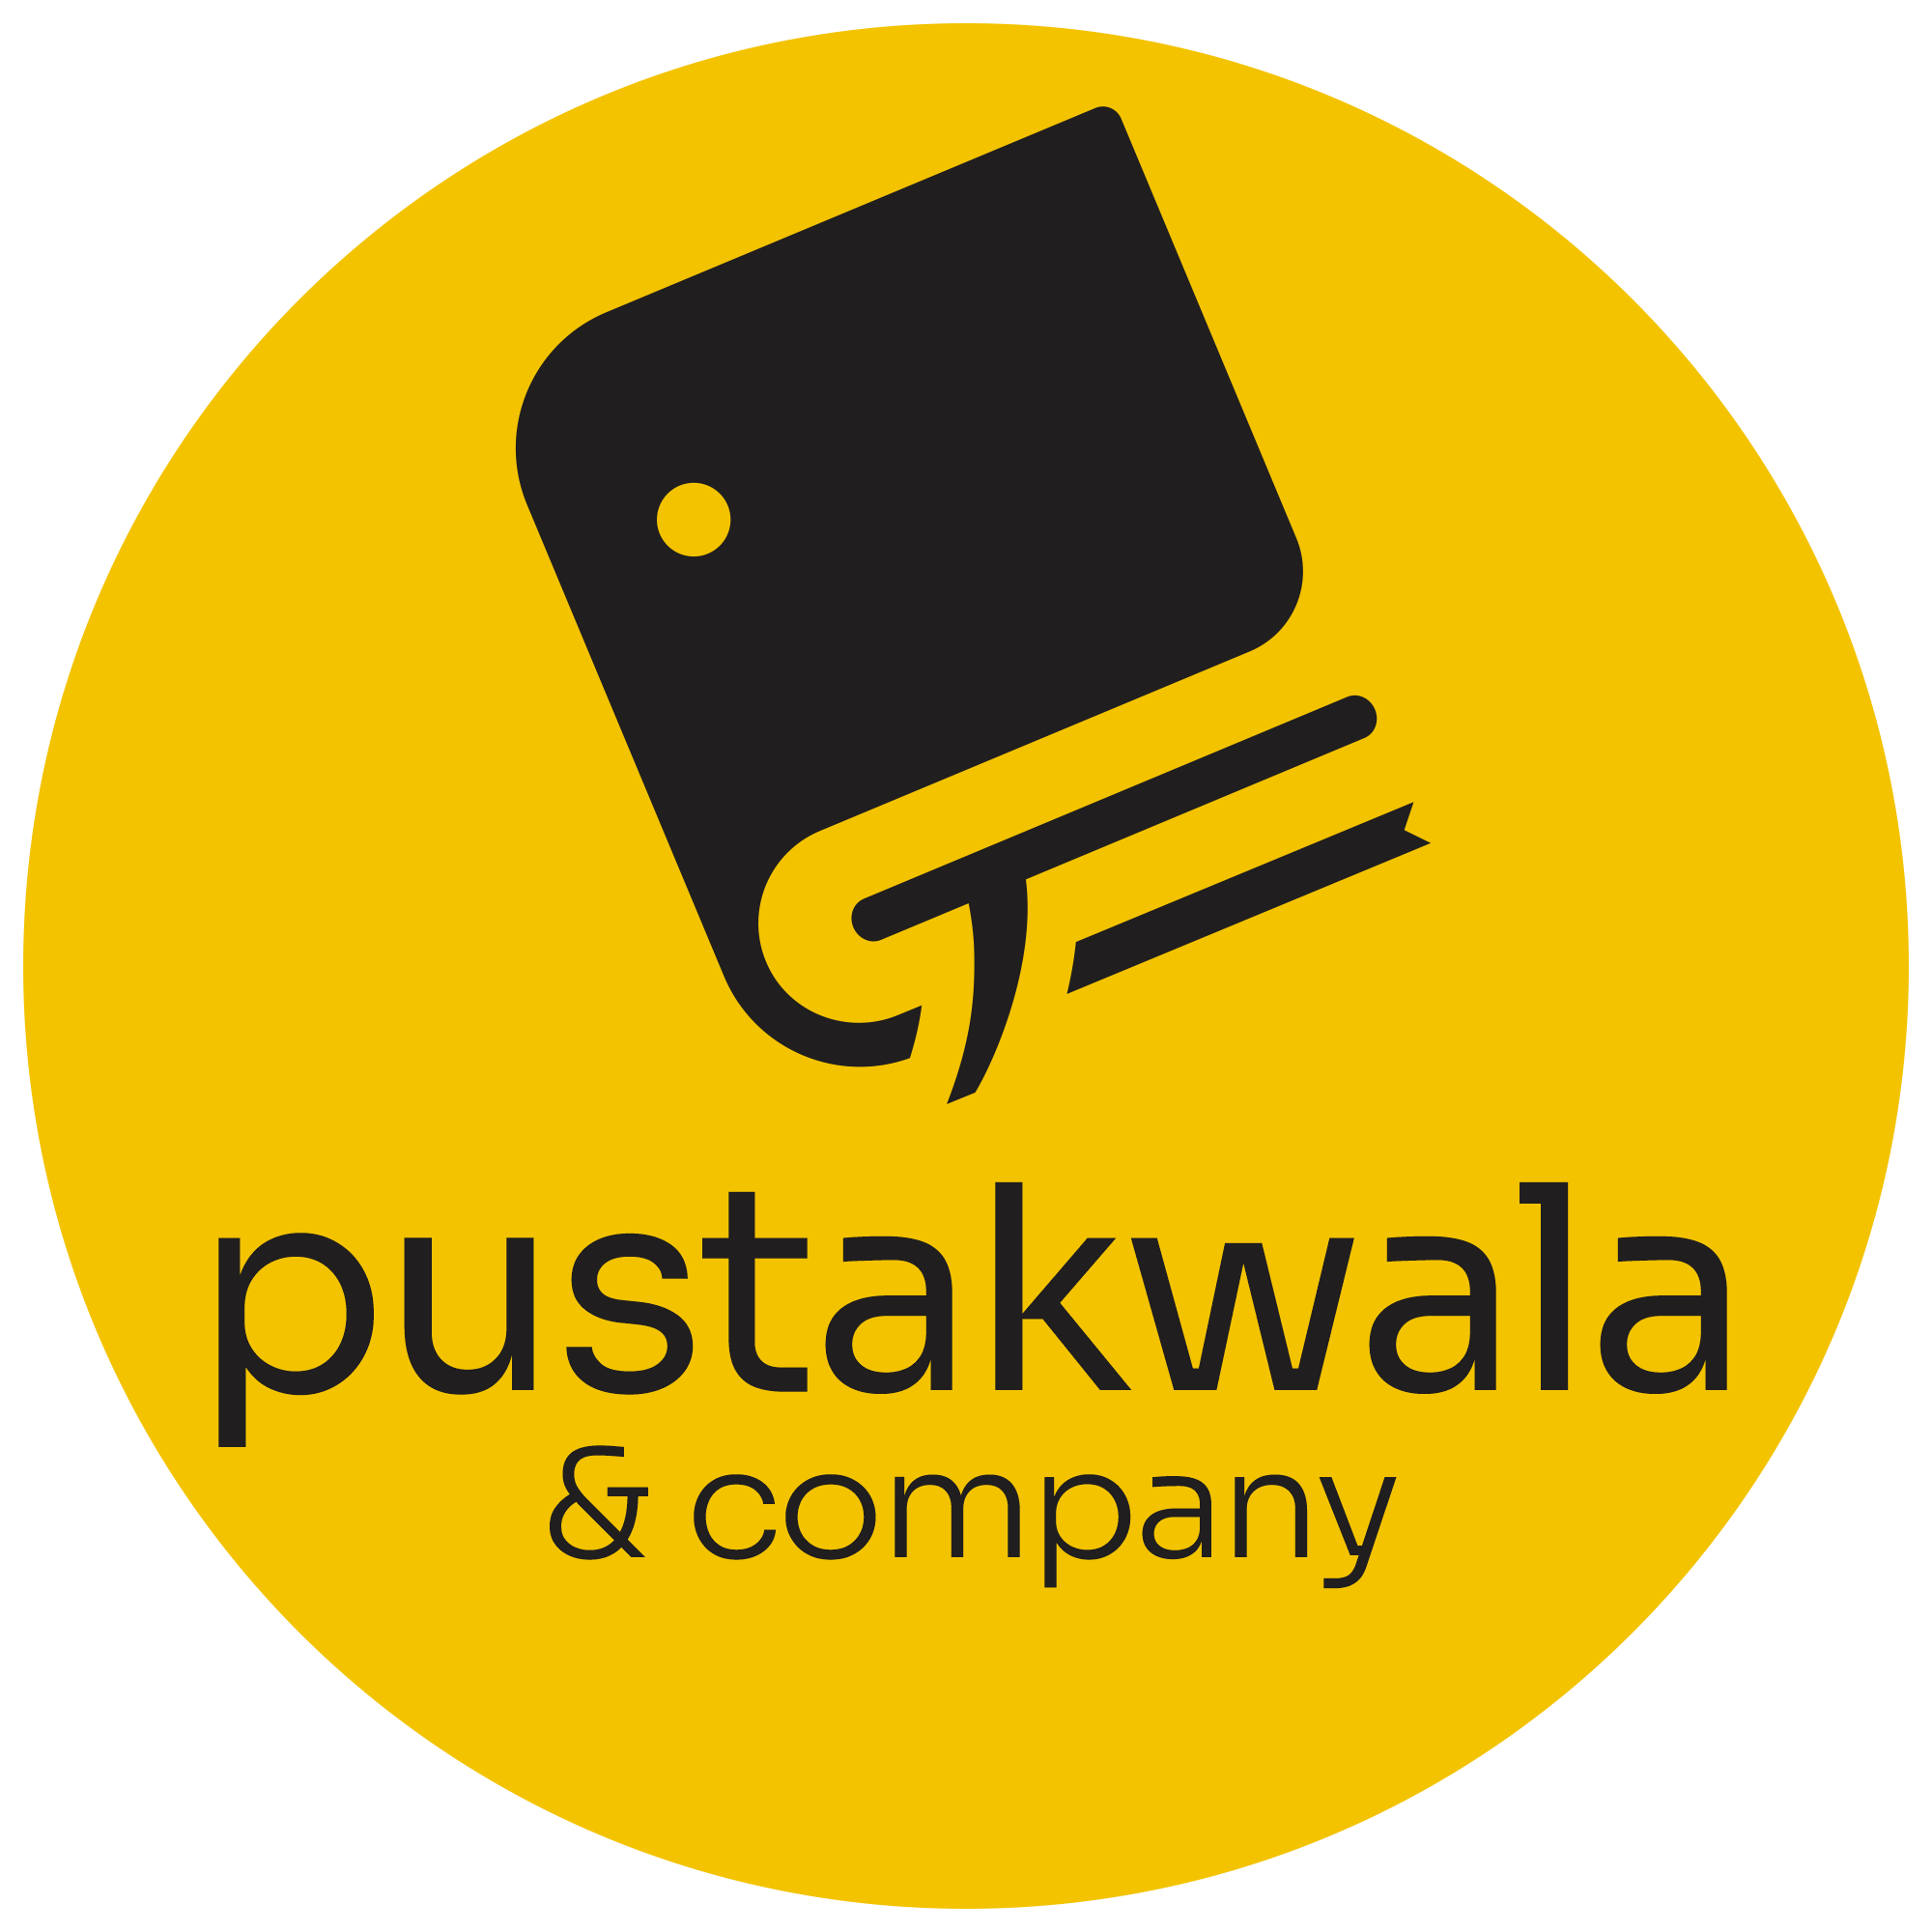 pustakwala and company